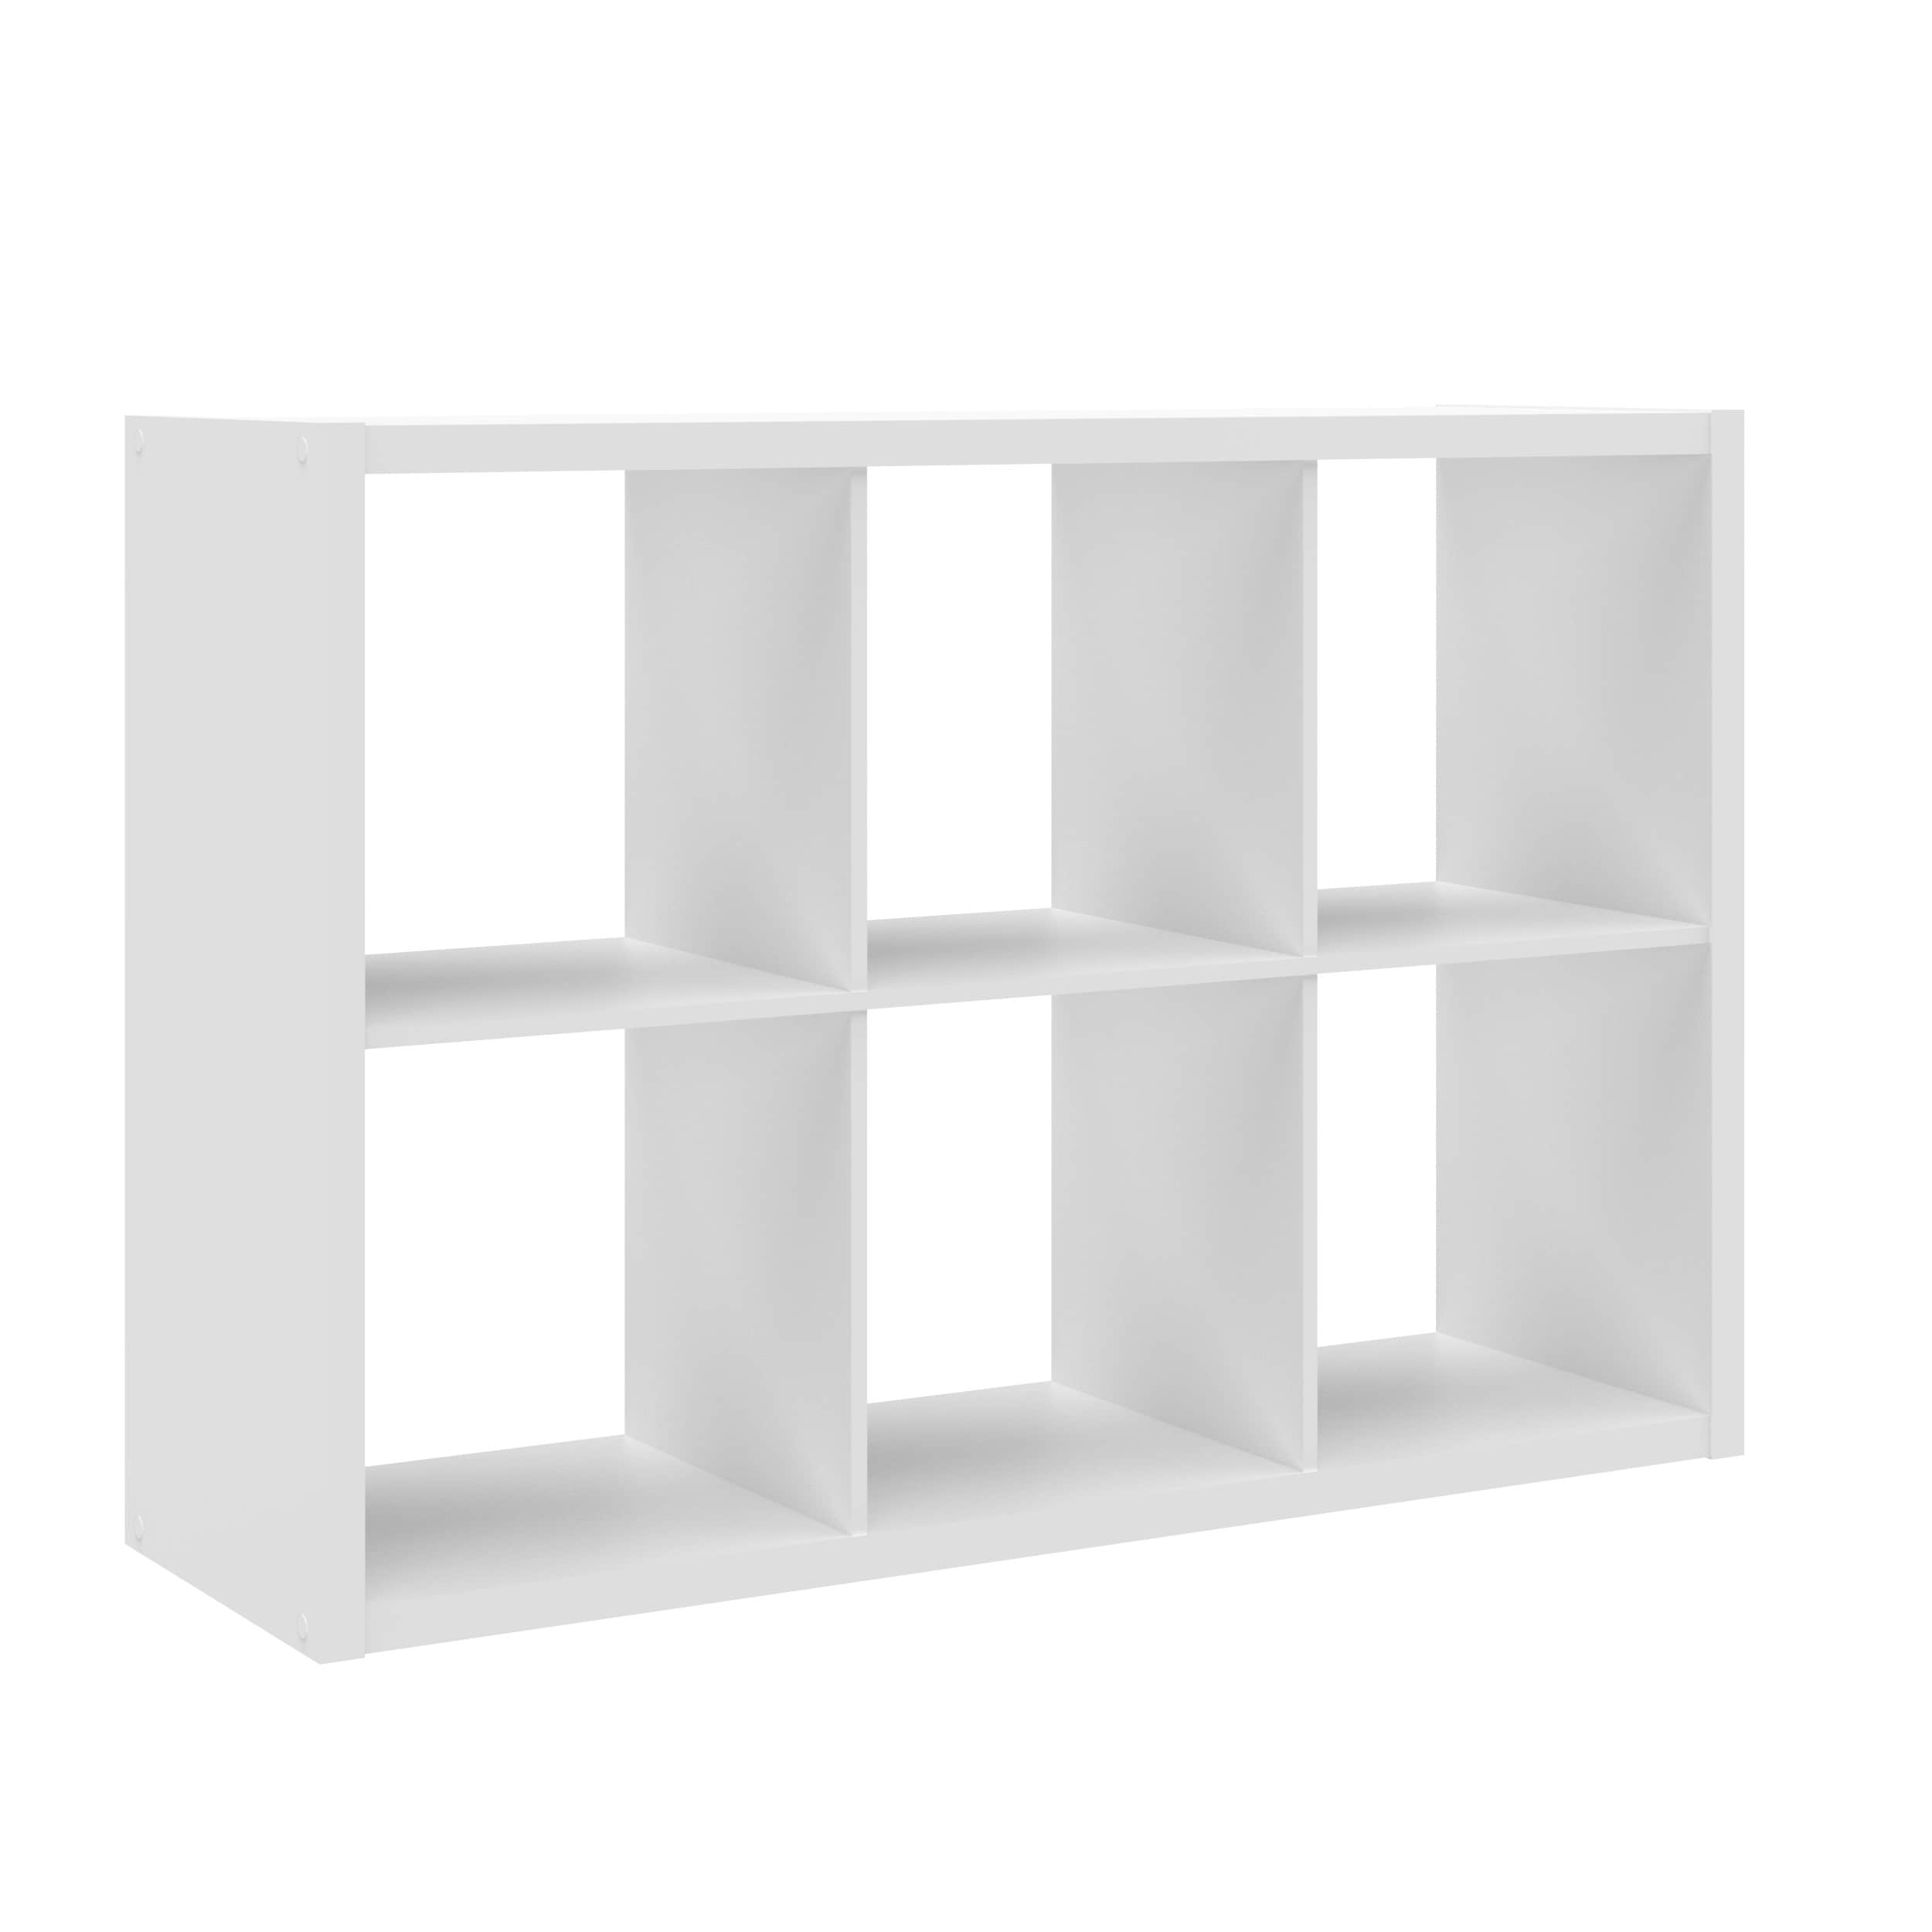 Indoor 8 Cube Wood Composite Organizer Open Storage Horizontal Vertical Display 